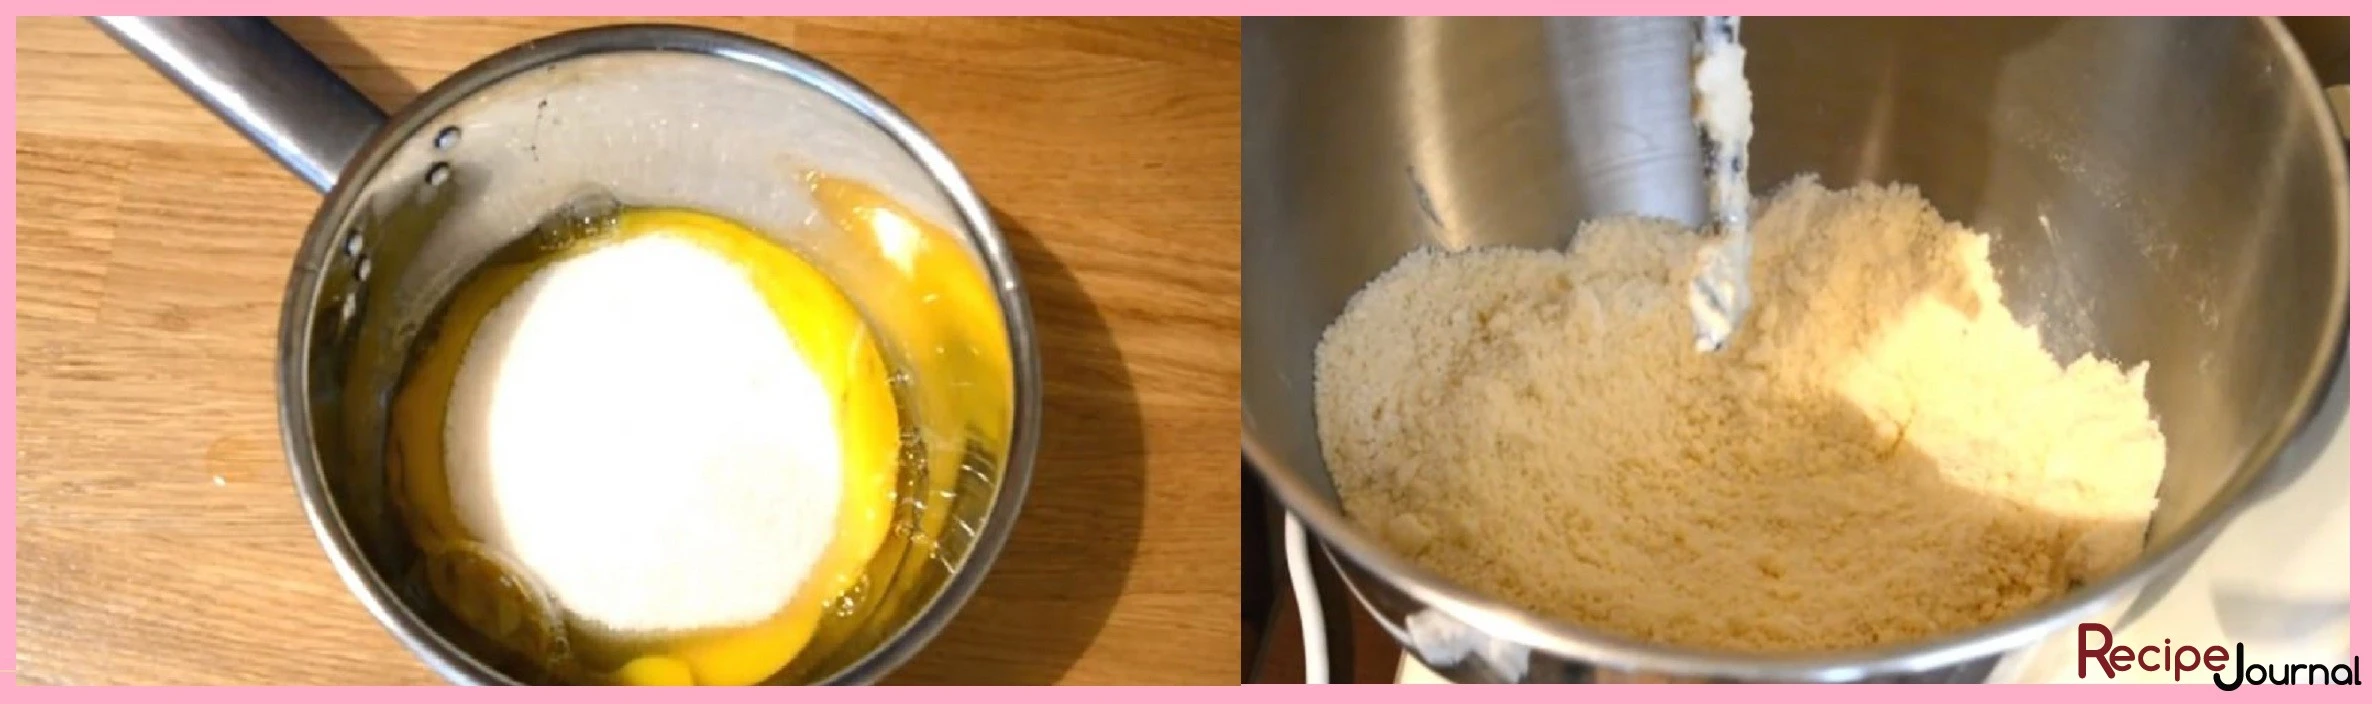 Сначала готовим крем, яйца, сахар растираем в кастрюльке с толстым дном, добавляем муку, хорошо перемешиваем. Теперь вливаем молоко, размешиваем и ставим на слабый огонь, постоянно помешивая, доводим до кипения (когда крем загустеет и начнет булькать). Снимаем с огня, добавляем ванильный сахар и размягченное сливочное масло. Хорошо перемешиваем и отставляем для остывания. В отдельной миске растираем размягченное масло с просеянной мукой, добавляем разрыхлитель и сахар, перемешиваем, яйцо смешиваем со сметаной и добавляем к муке. Замешиваем мягкое тесто, если тесто не будет собираться, можно немного добавить воды.